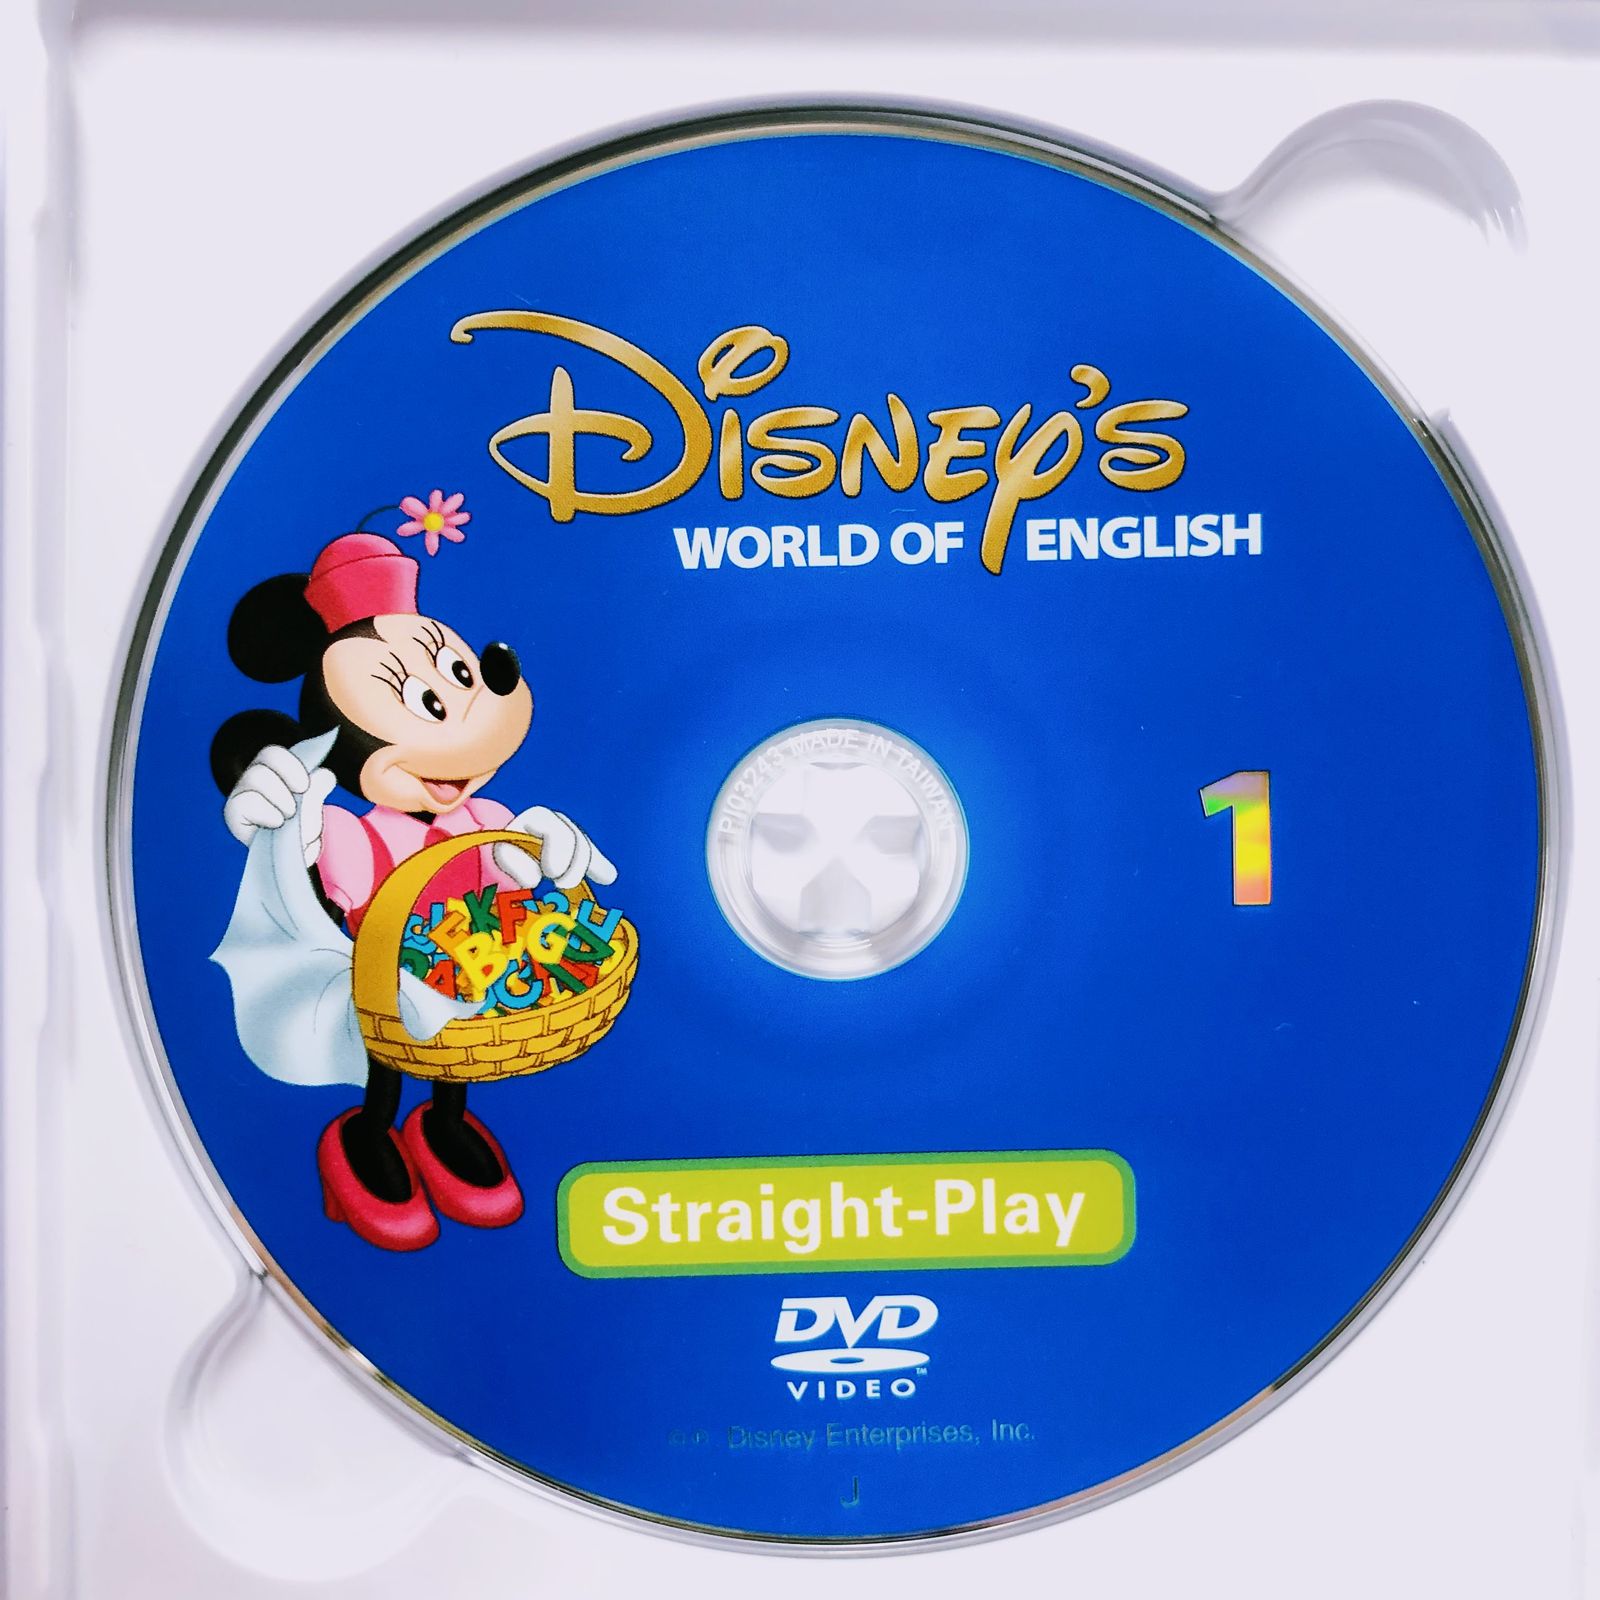 ストレートプレイ DVD 新子役 字幕有 2014年購入 d-361 ディズニー英語